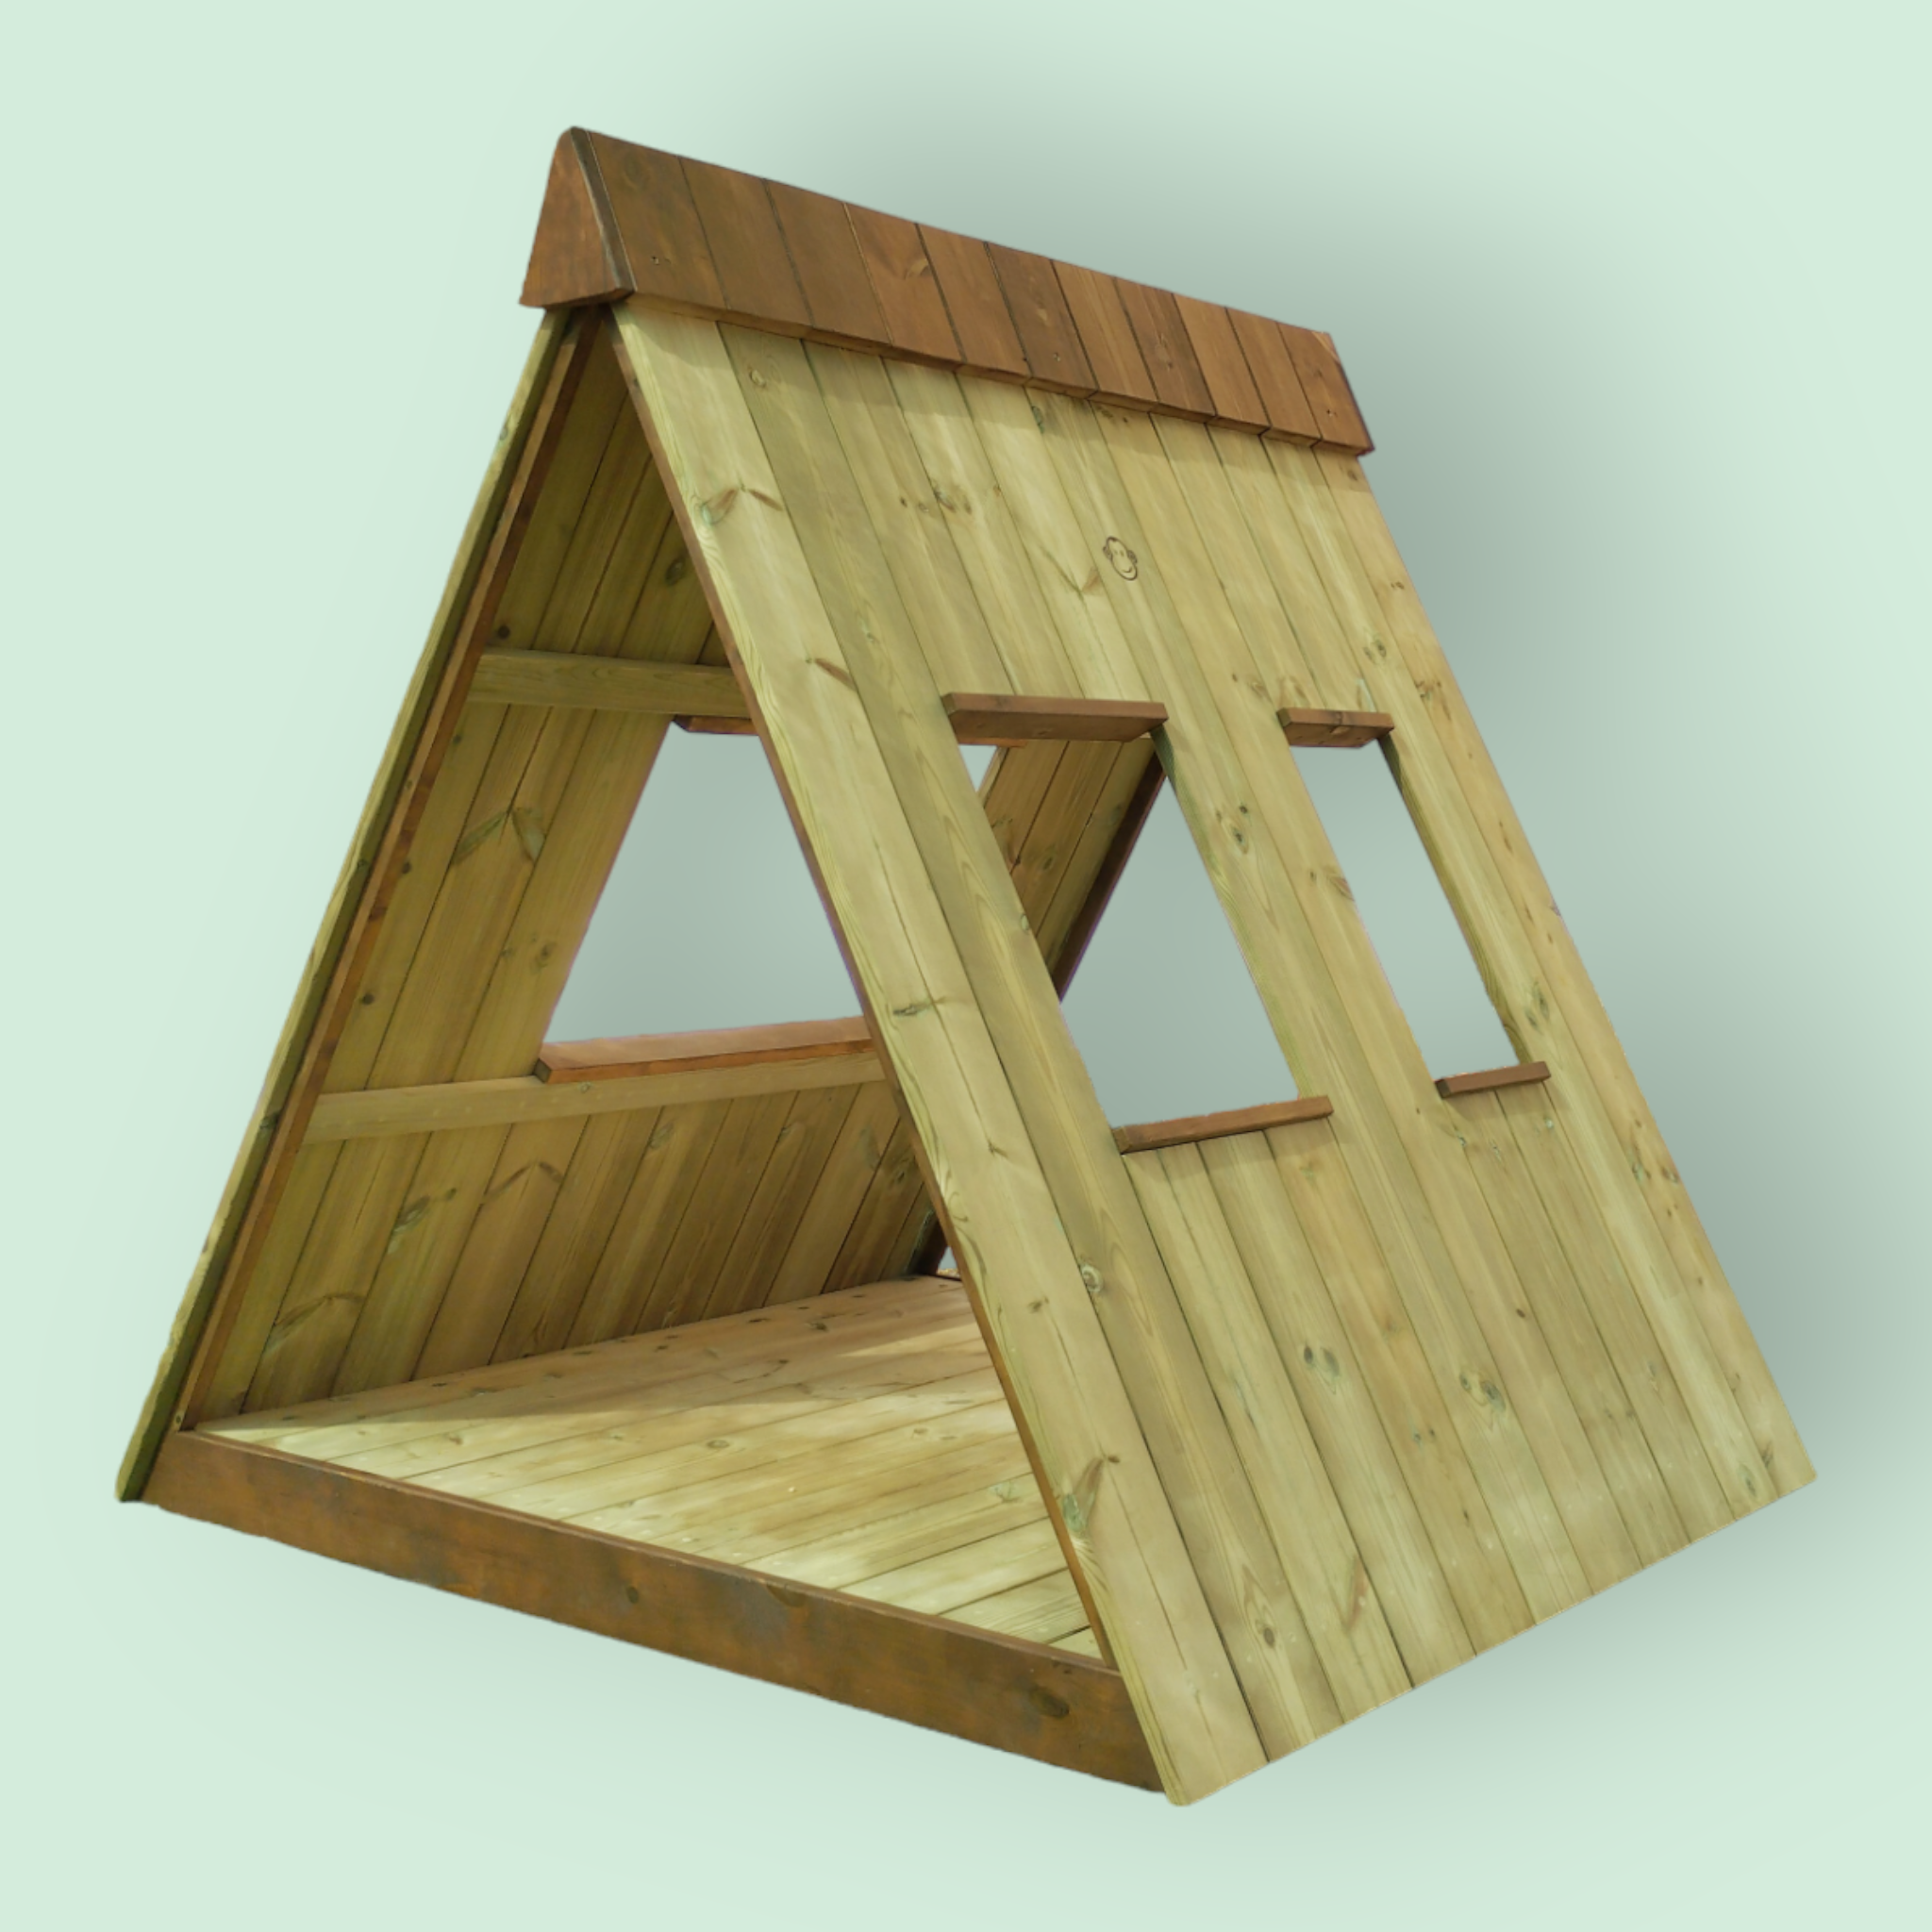 Tipi de madera para exterior